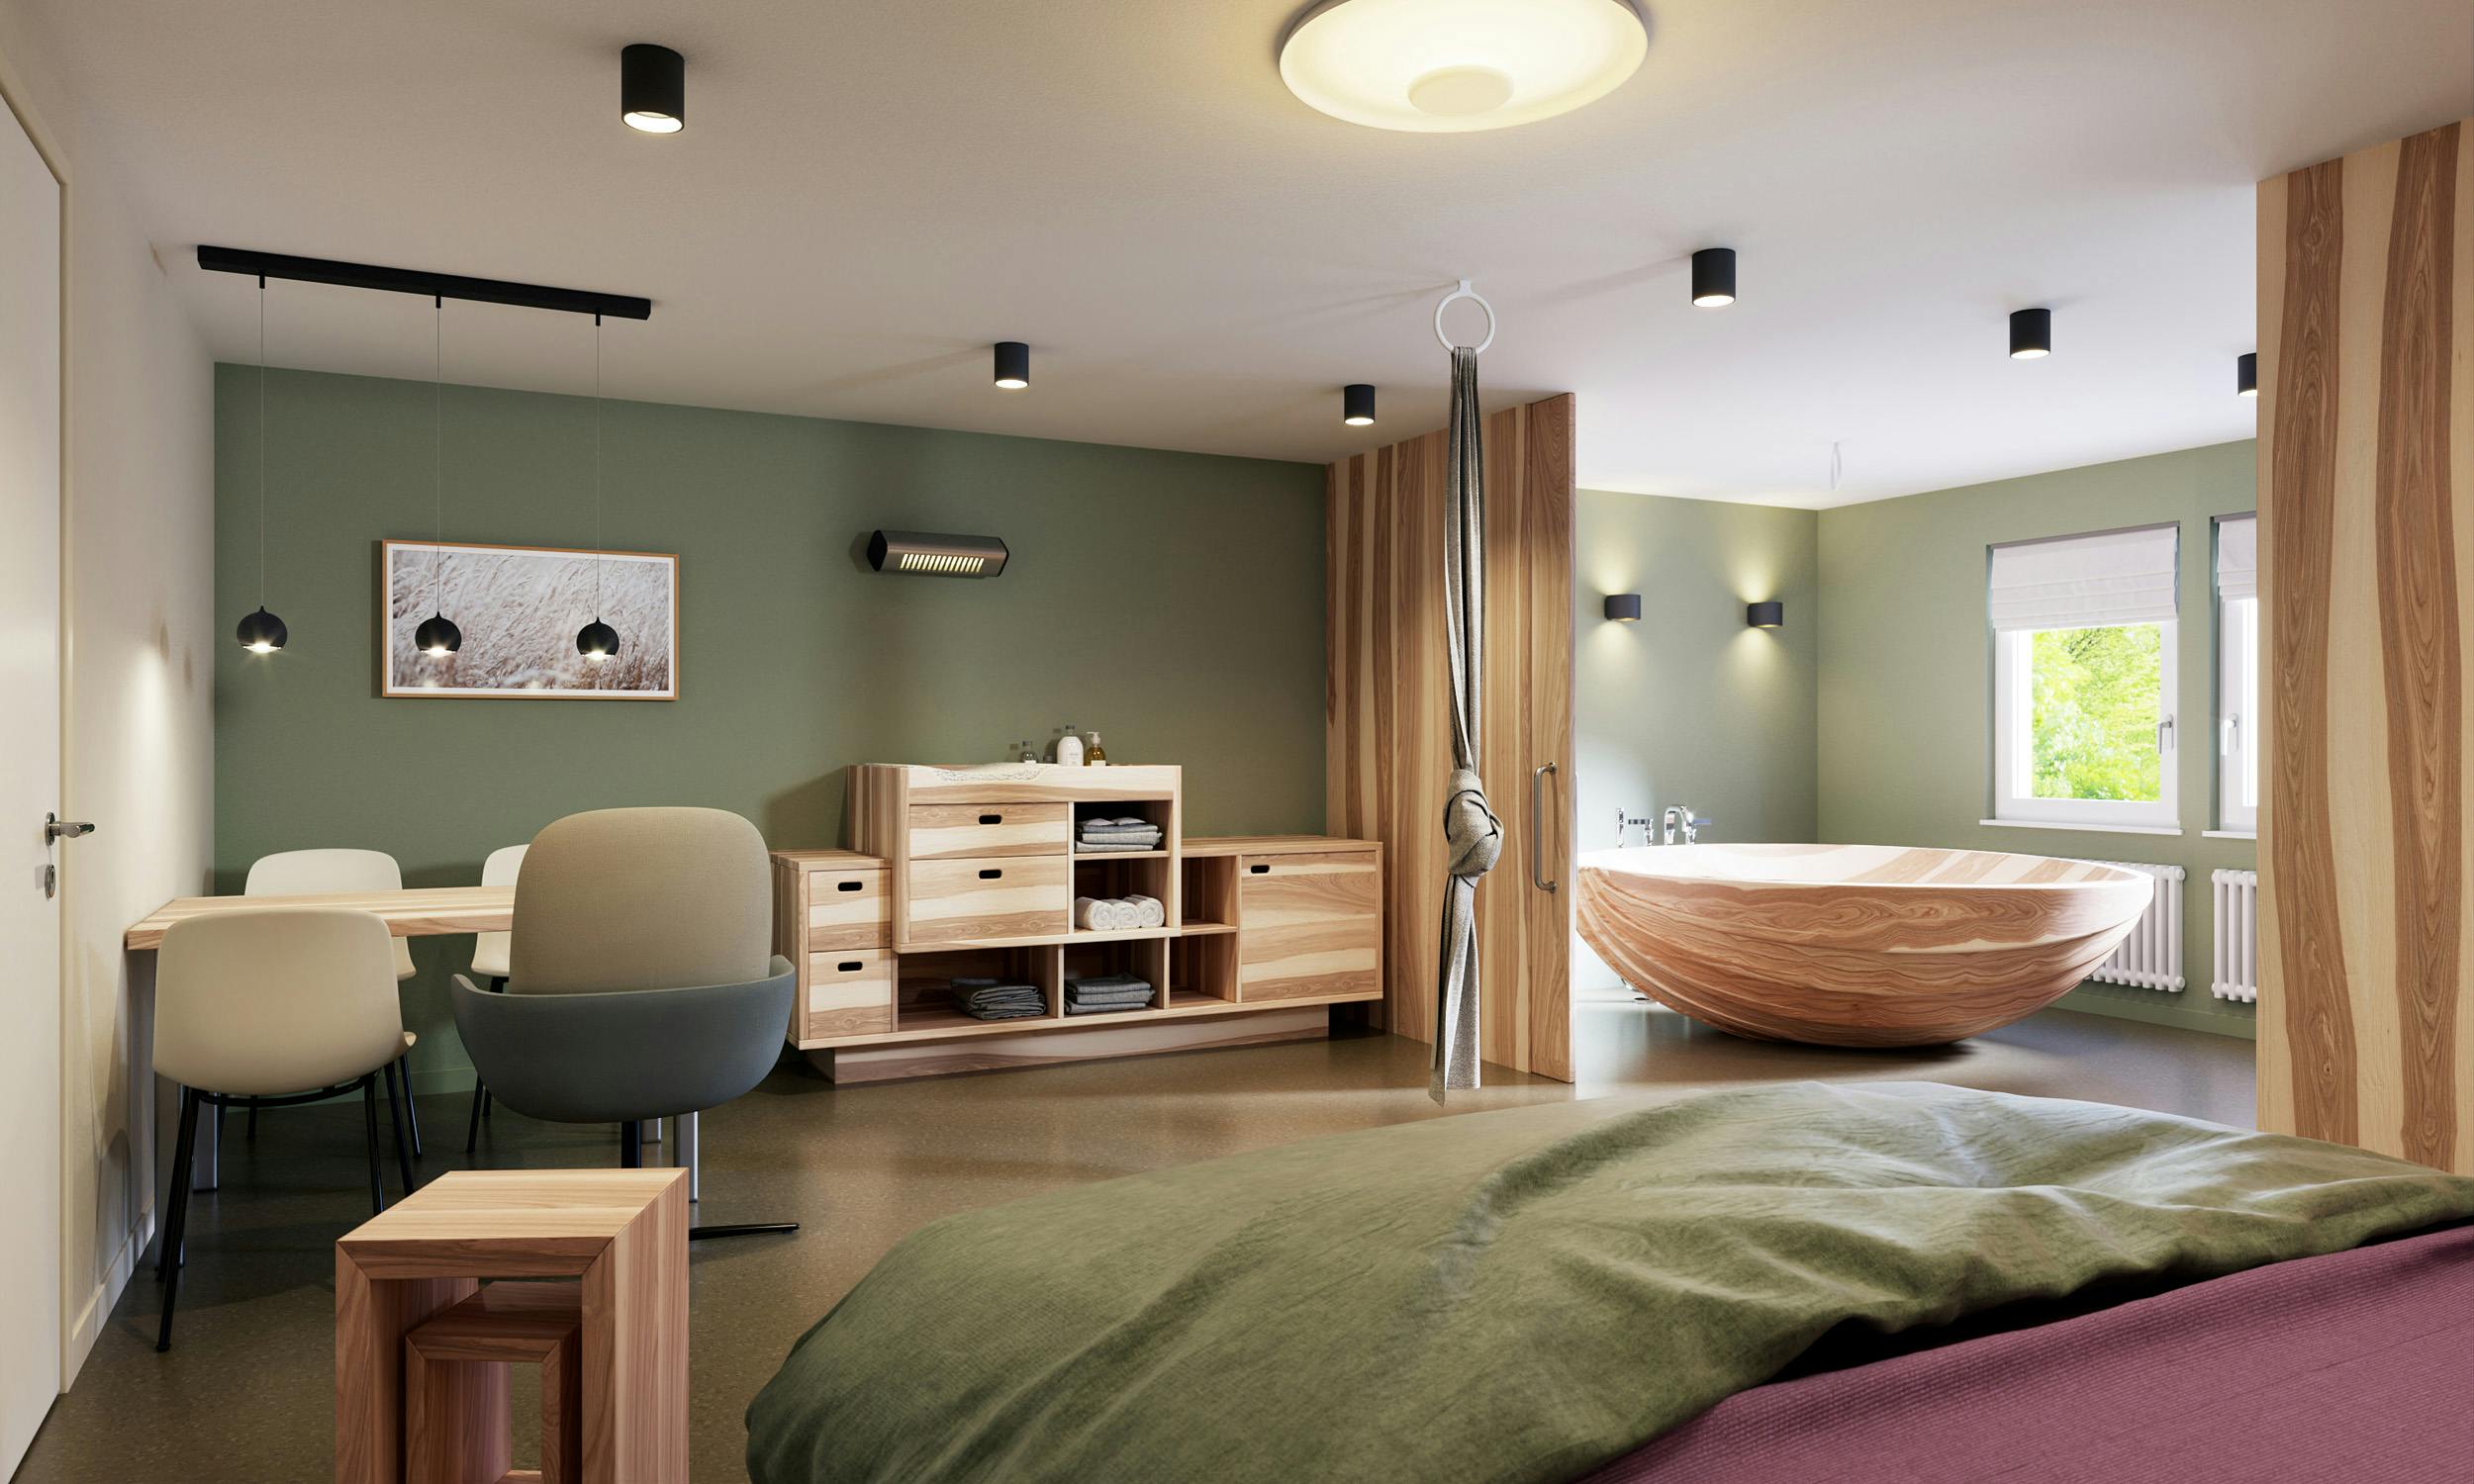 Geburtshaus Zollikerberg: Modernes Zimmer mit grünen Wänden, Holzmöbeln und Badewanne.